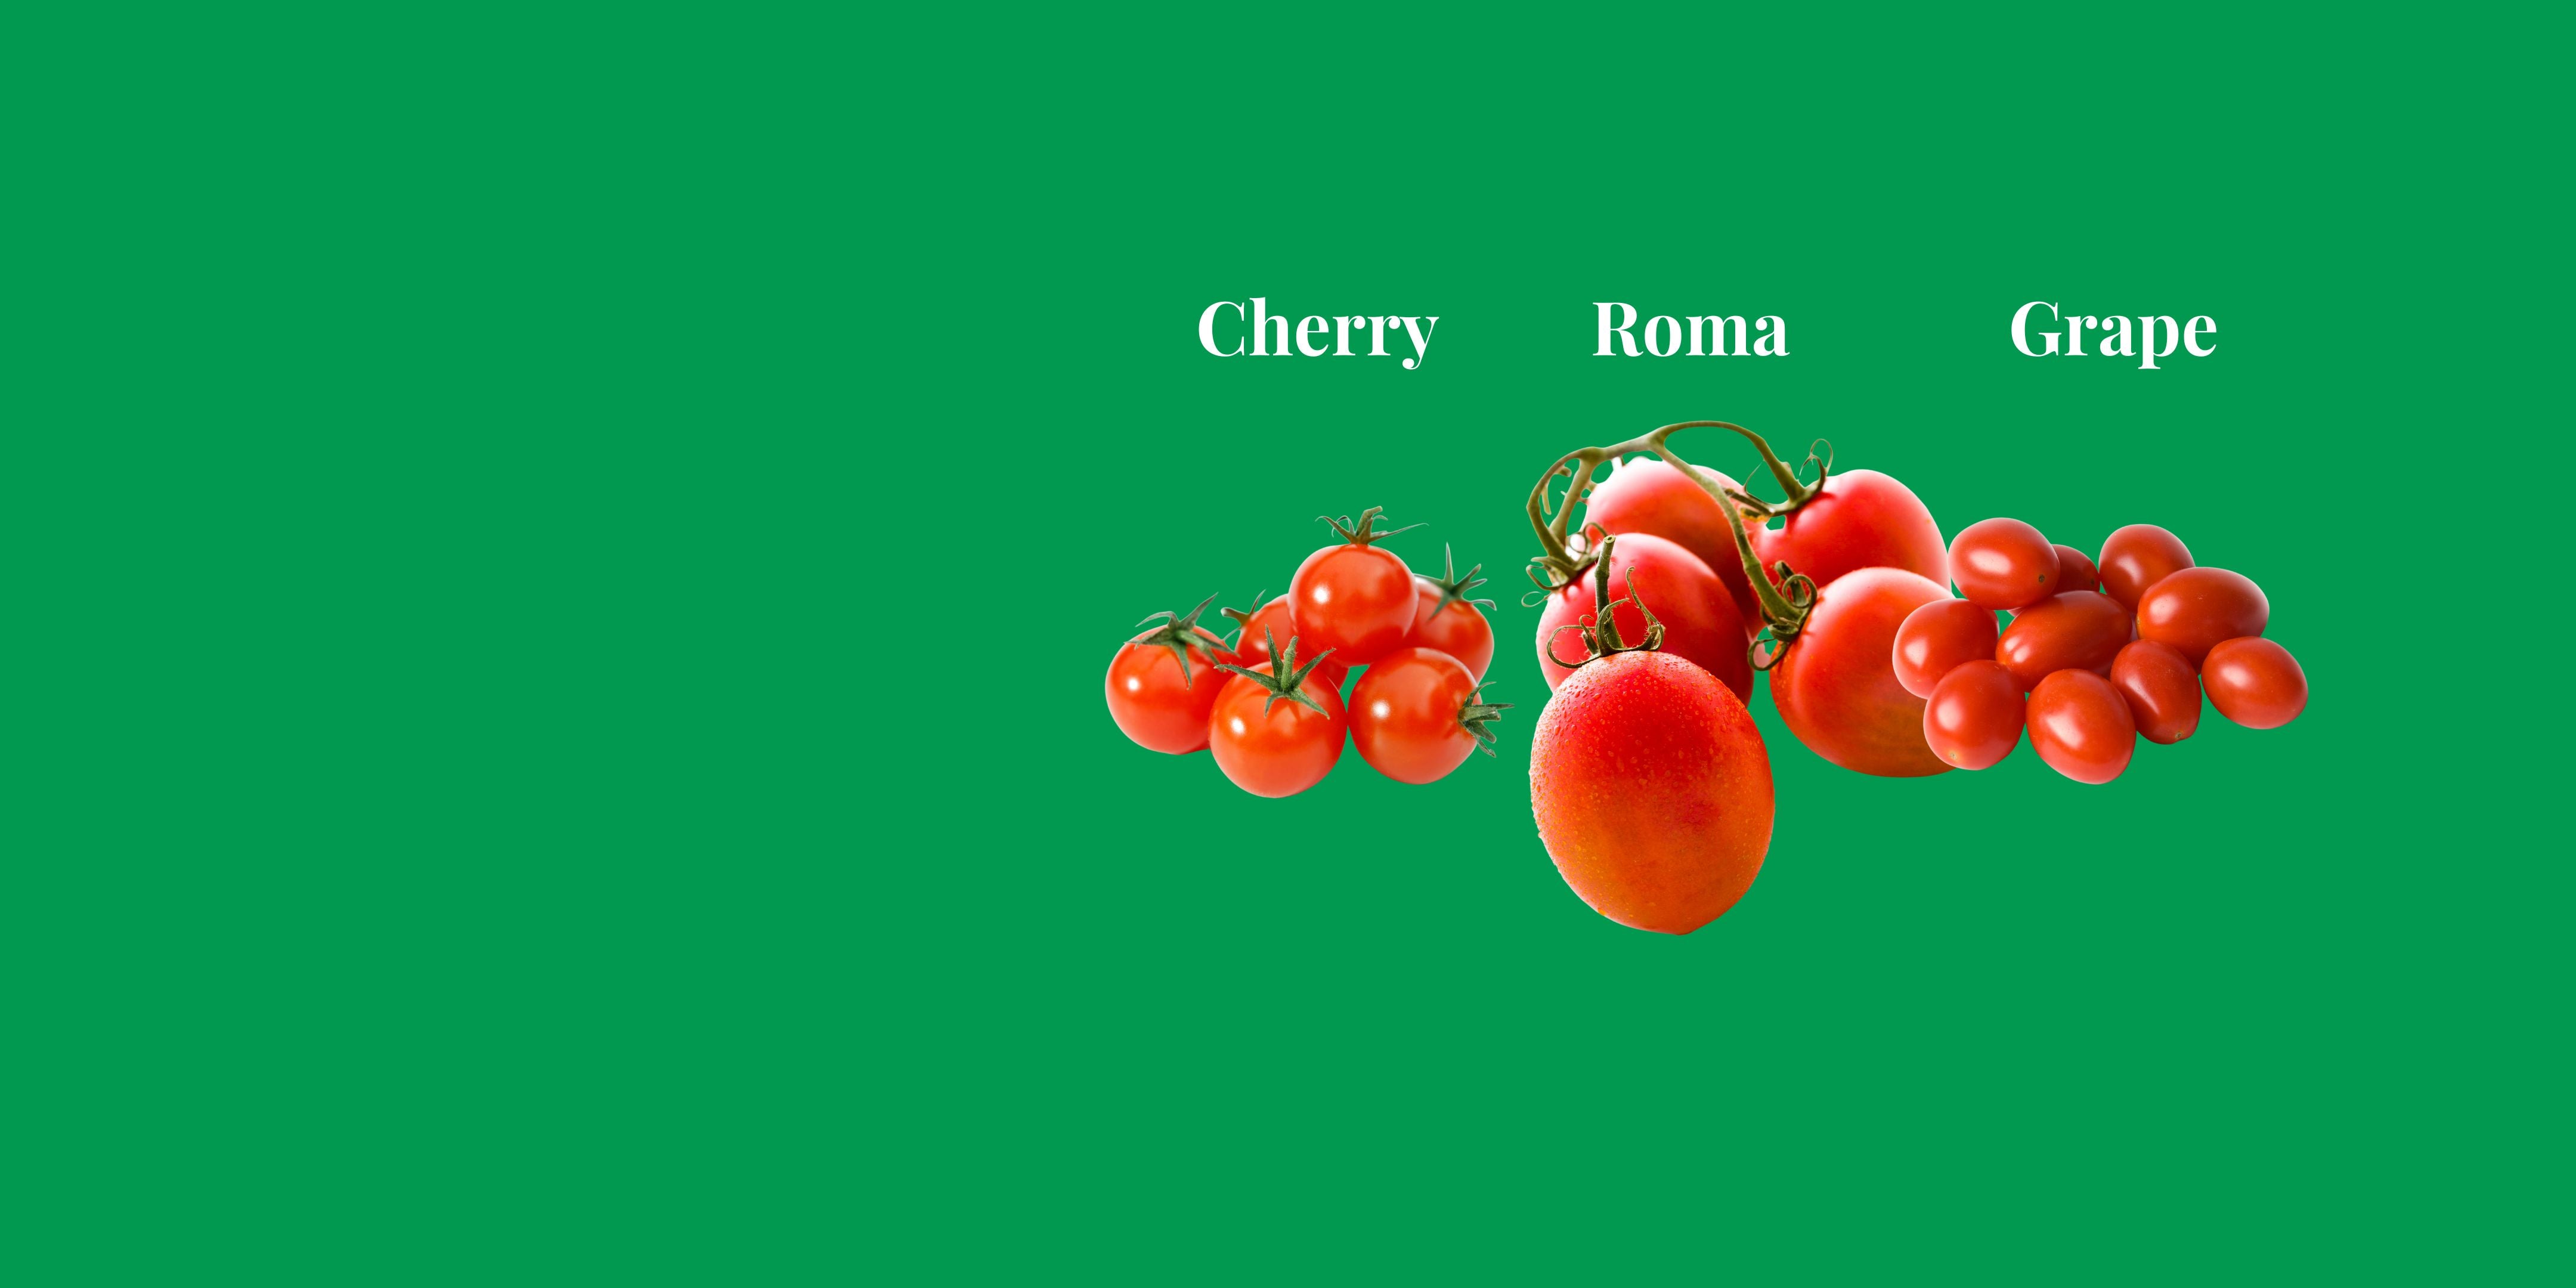 The Tomato Showdown: Cherry vs. Grape vs. Roma - Battle of the Juicy Titans!